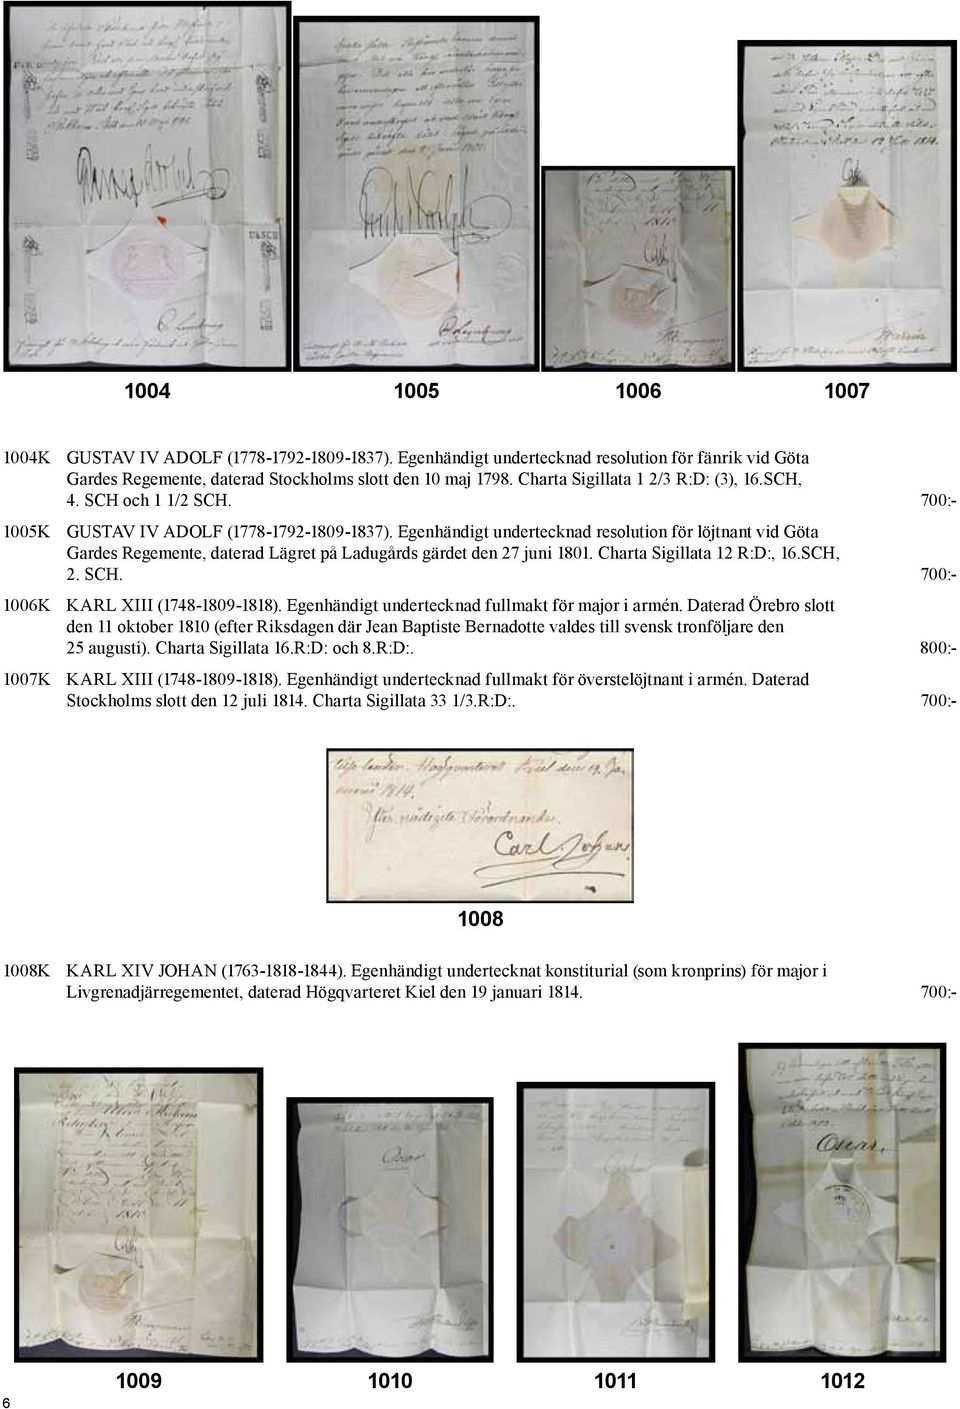 Egenhändigt undertecknad resolution för löjtnant vid Göta Gardes Regemente, daterad Lägret på Ladugårds gärdet den 27 juni 1801. Charta Sigillata 12 R:D:, 16.SCH, 2. SCH.